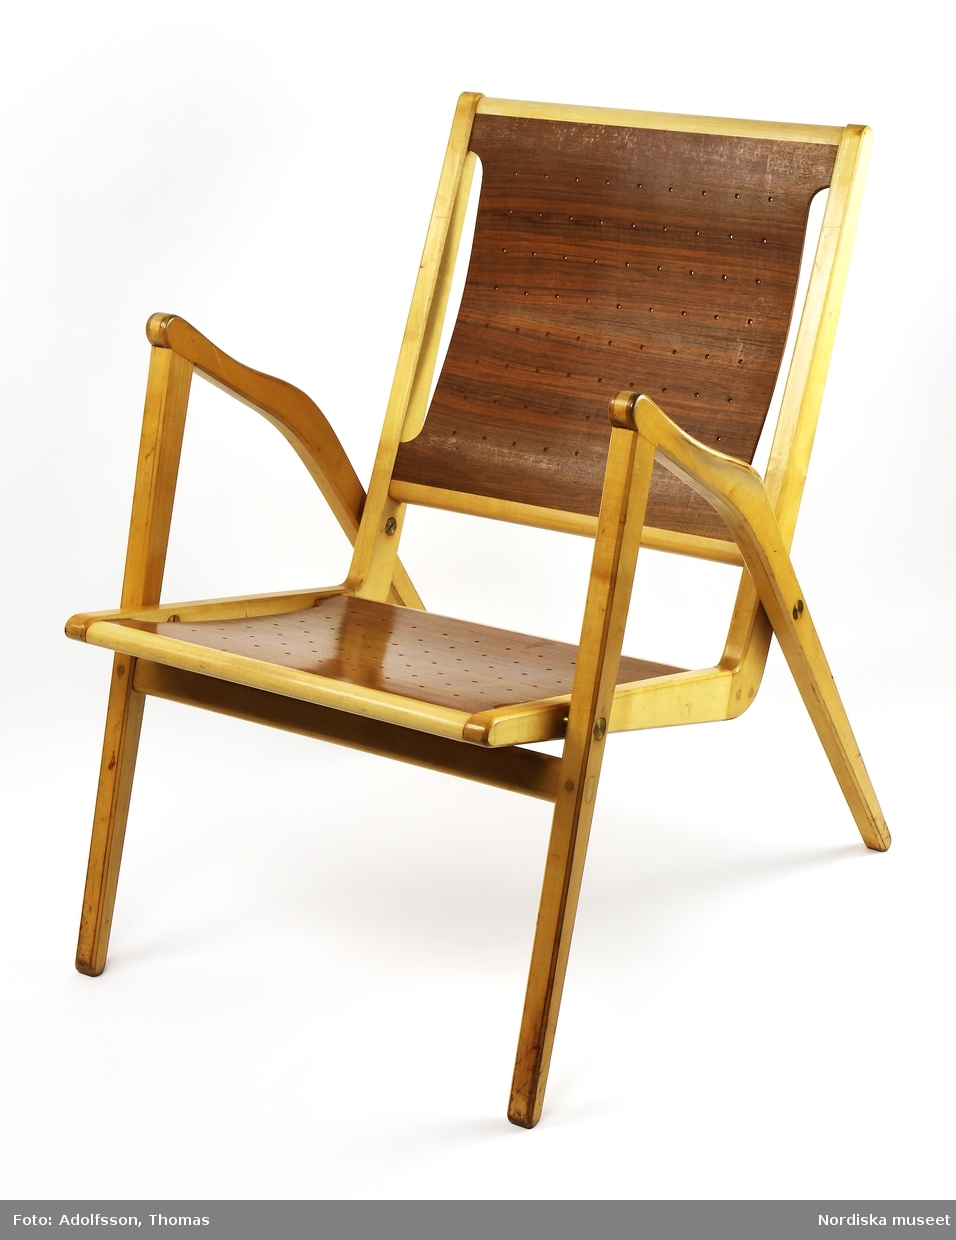 Stapelbar stol, karmstol, med stativ av klarlackad björk. Formpressad, perforerad sits och rygg av valnötsfaner. Sittdel och stativ sammansatta med mässingsbeslag av tryckknappstyp. Sammanfogning med slitsar som även ger en dekorativ verkan. Formgiven 1955 och sannolikt tillverkad samma år.
/Anna Arfvidsson Womack 2019-01-29